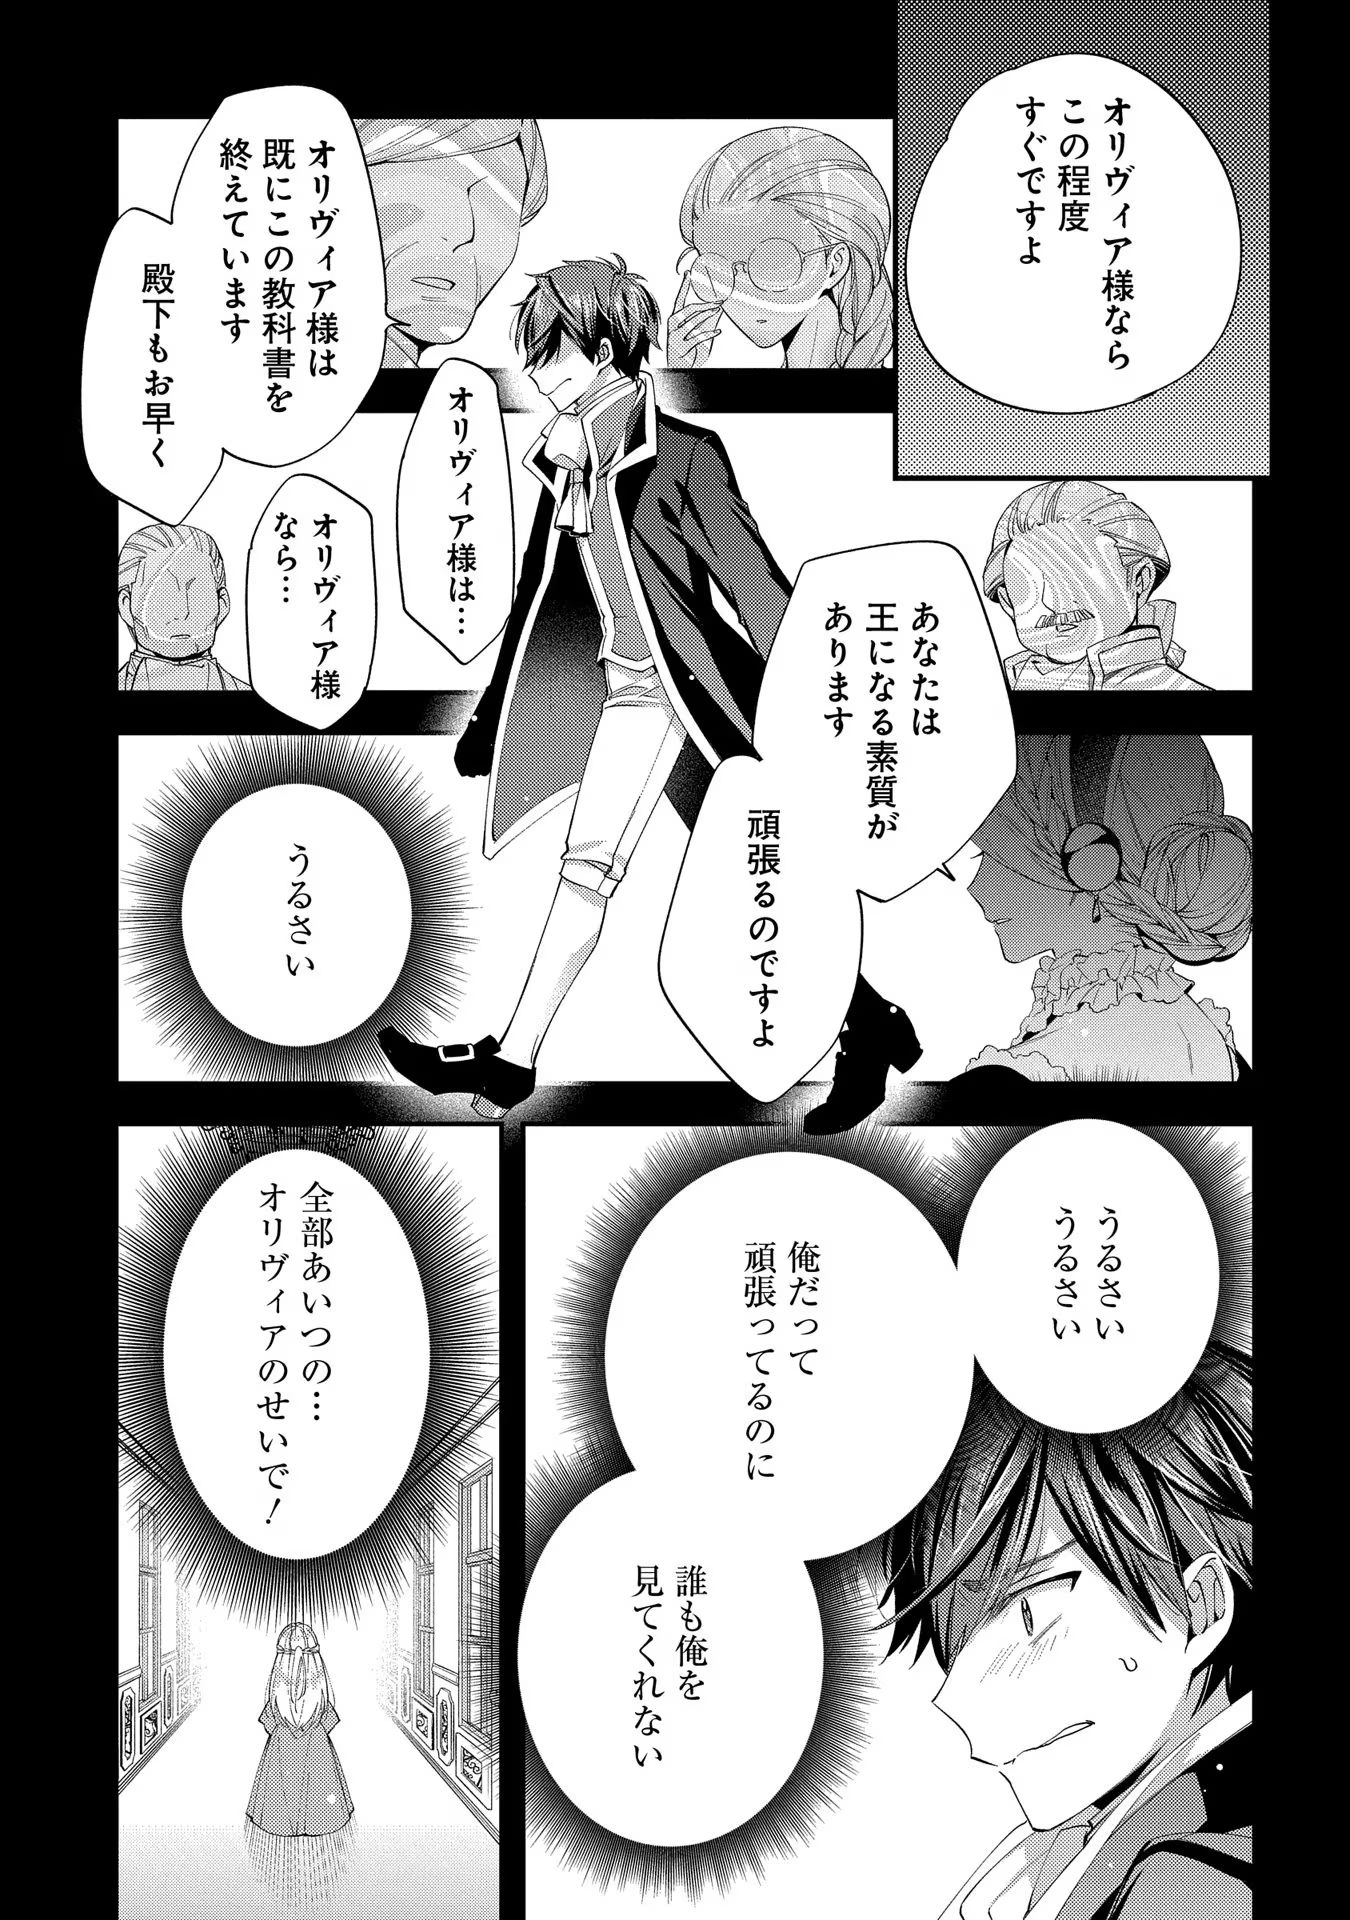 Outaishi ni Konyaku Hakisareta no de, Mou Baka no Furi wa Yameyou to Omoimasu - Chapter 13 - Page 23